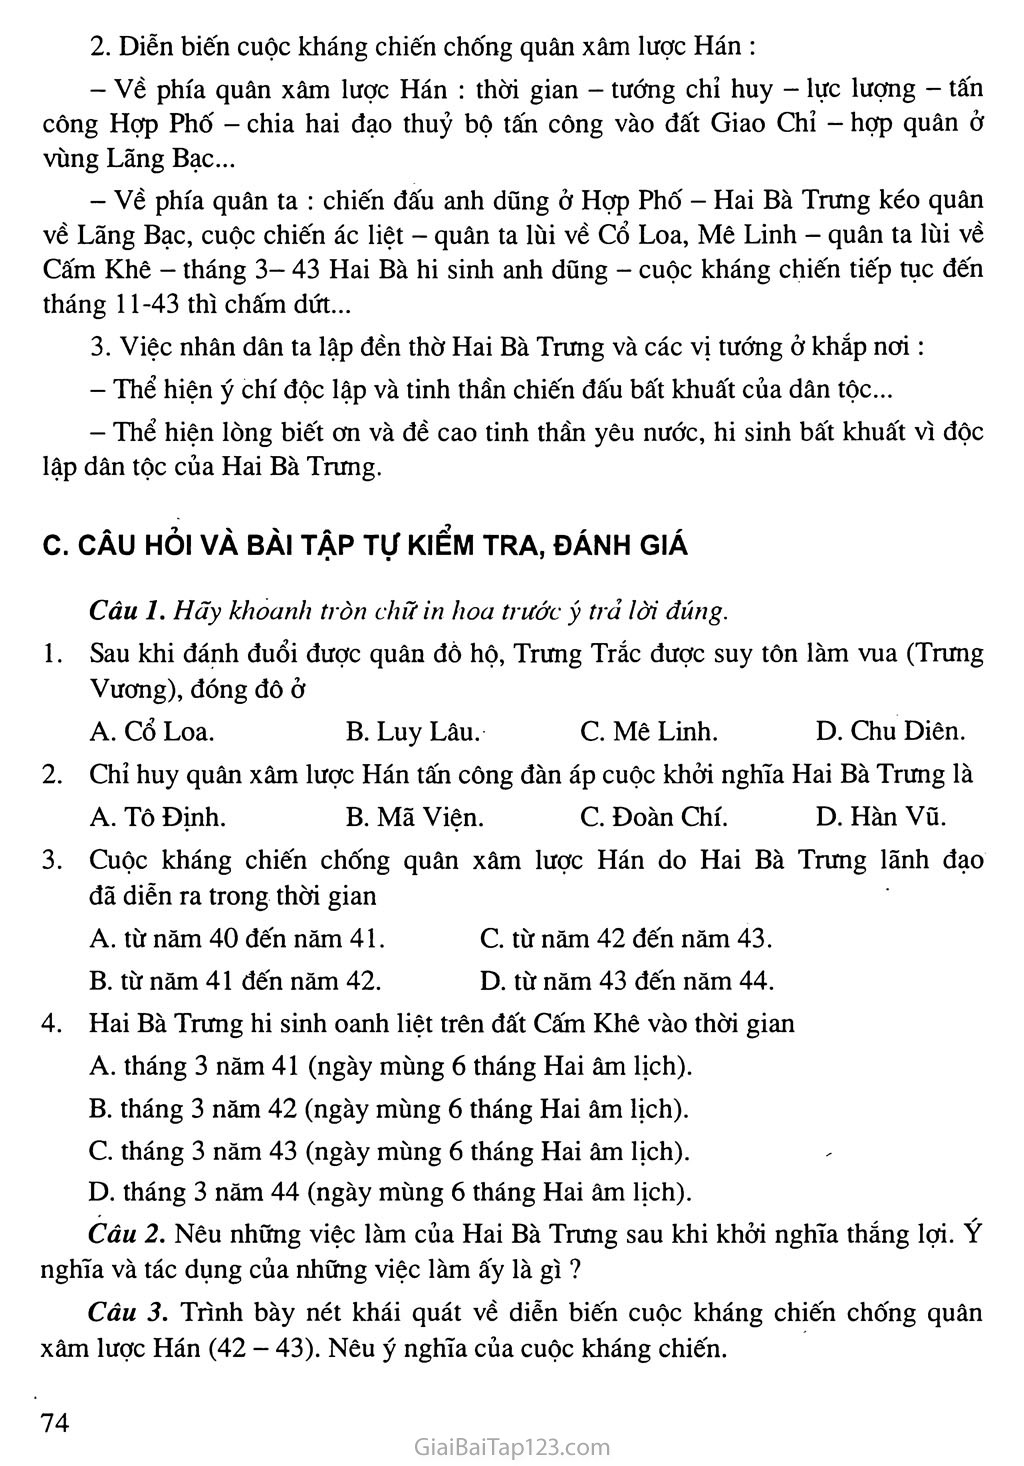 Bài 18: Trưng Vương và cuộc kháng chiến chống quân xâm lược Hán trang 3